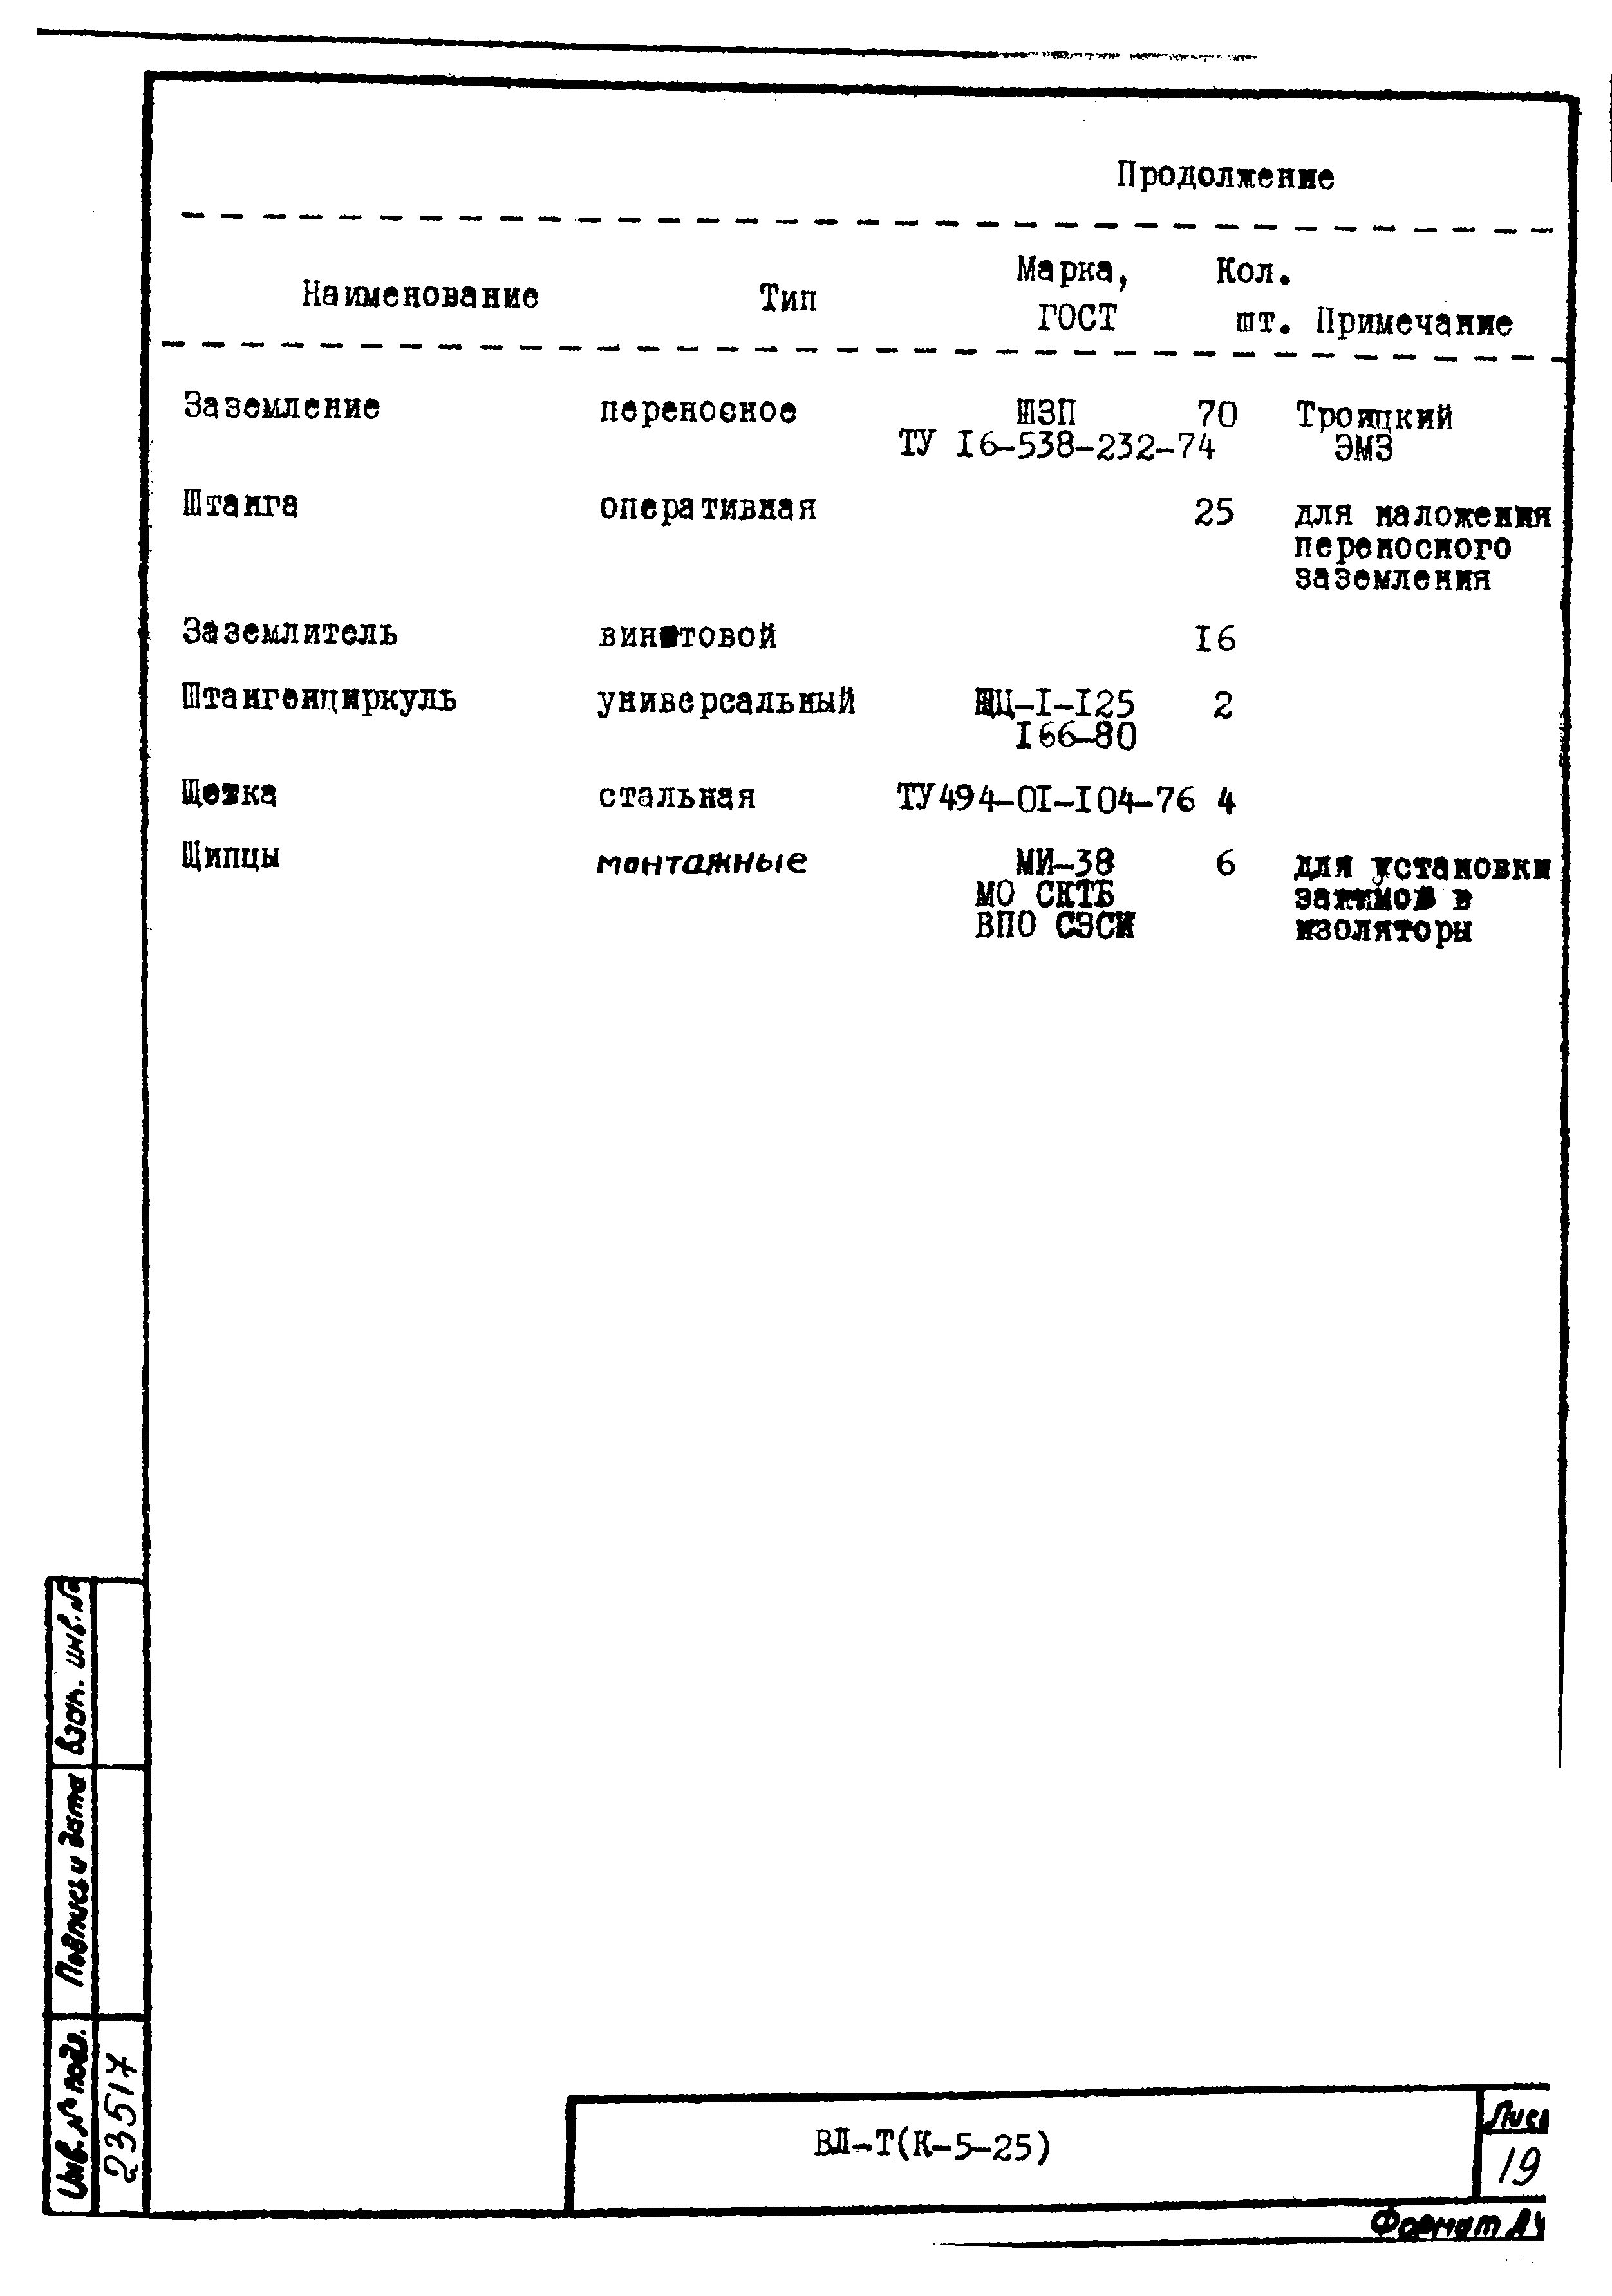 Технологическая карта К-5-25-15